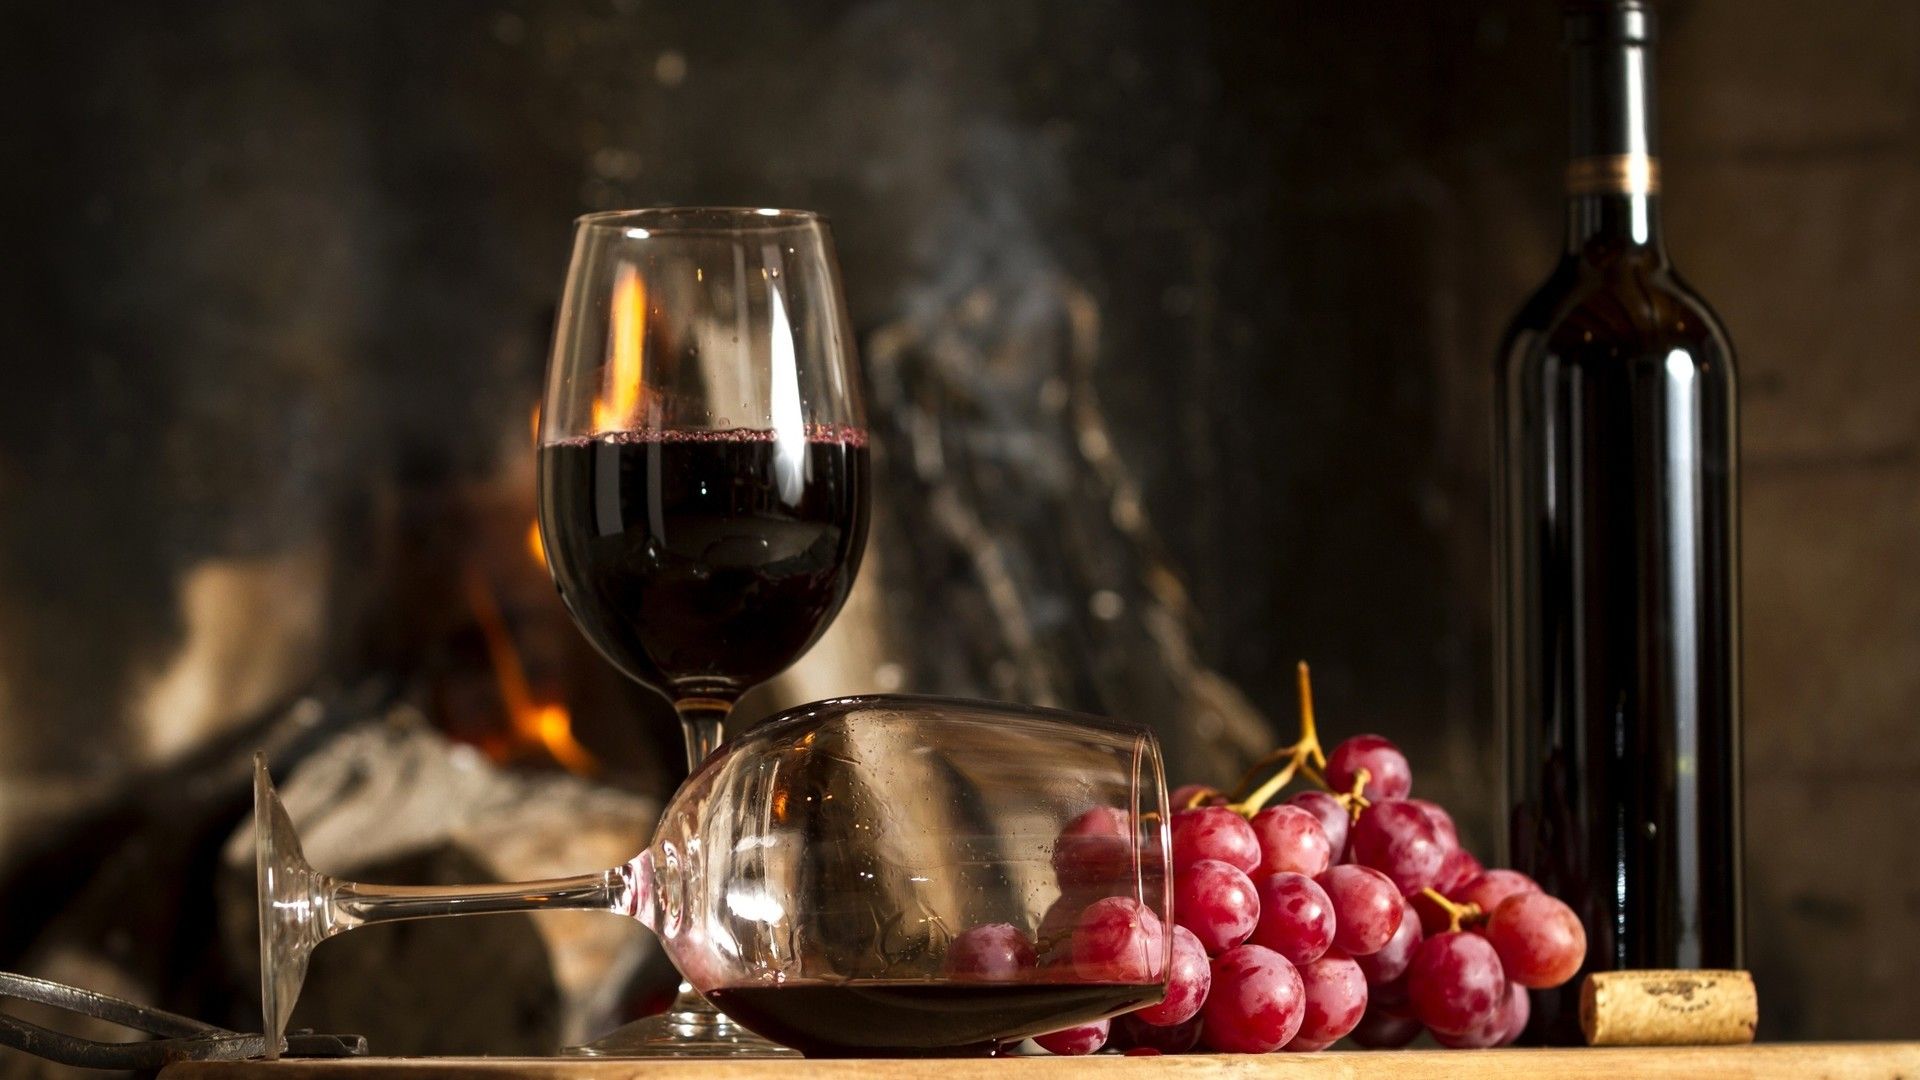 美味的葡萄酒与新鲜可口的葡萄高清摄影大图